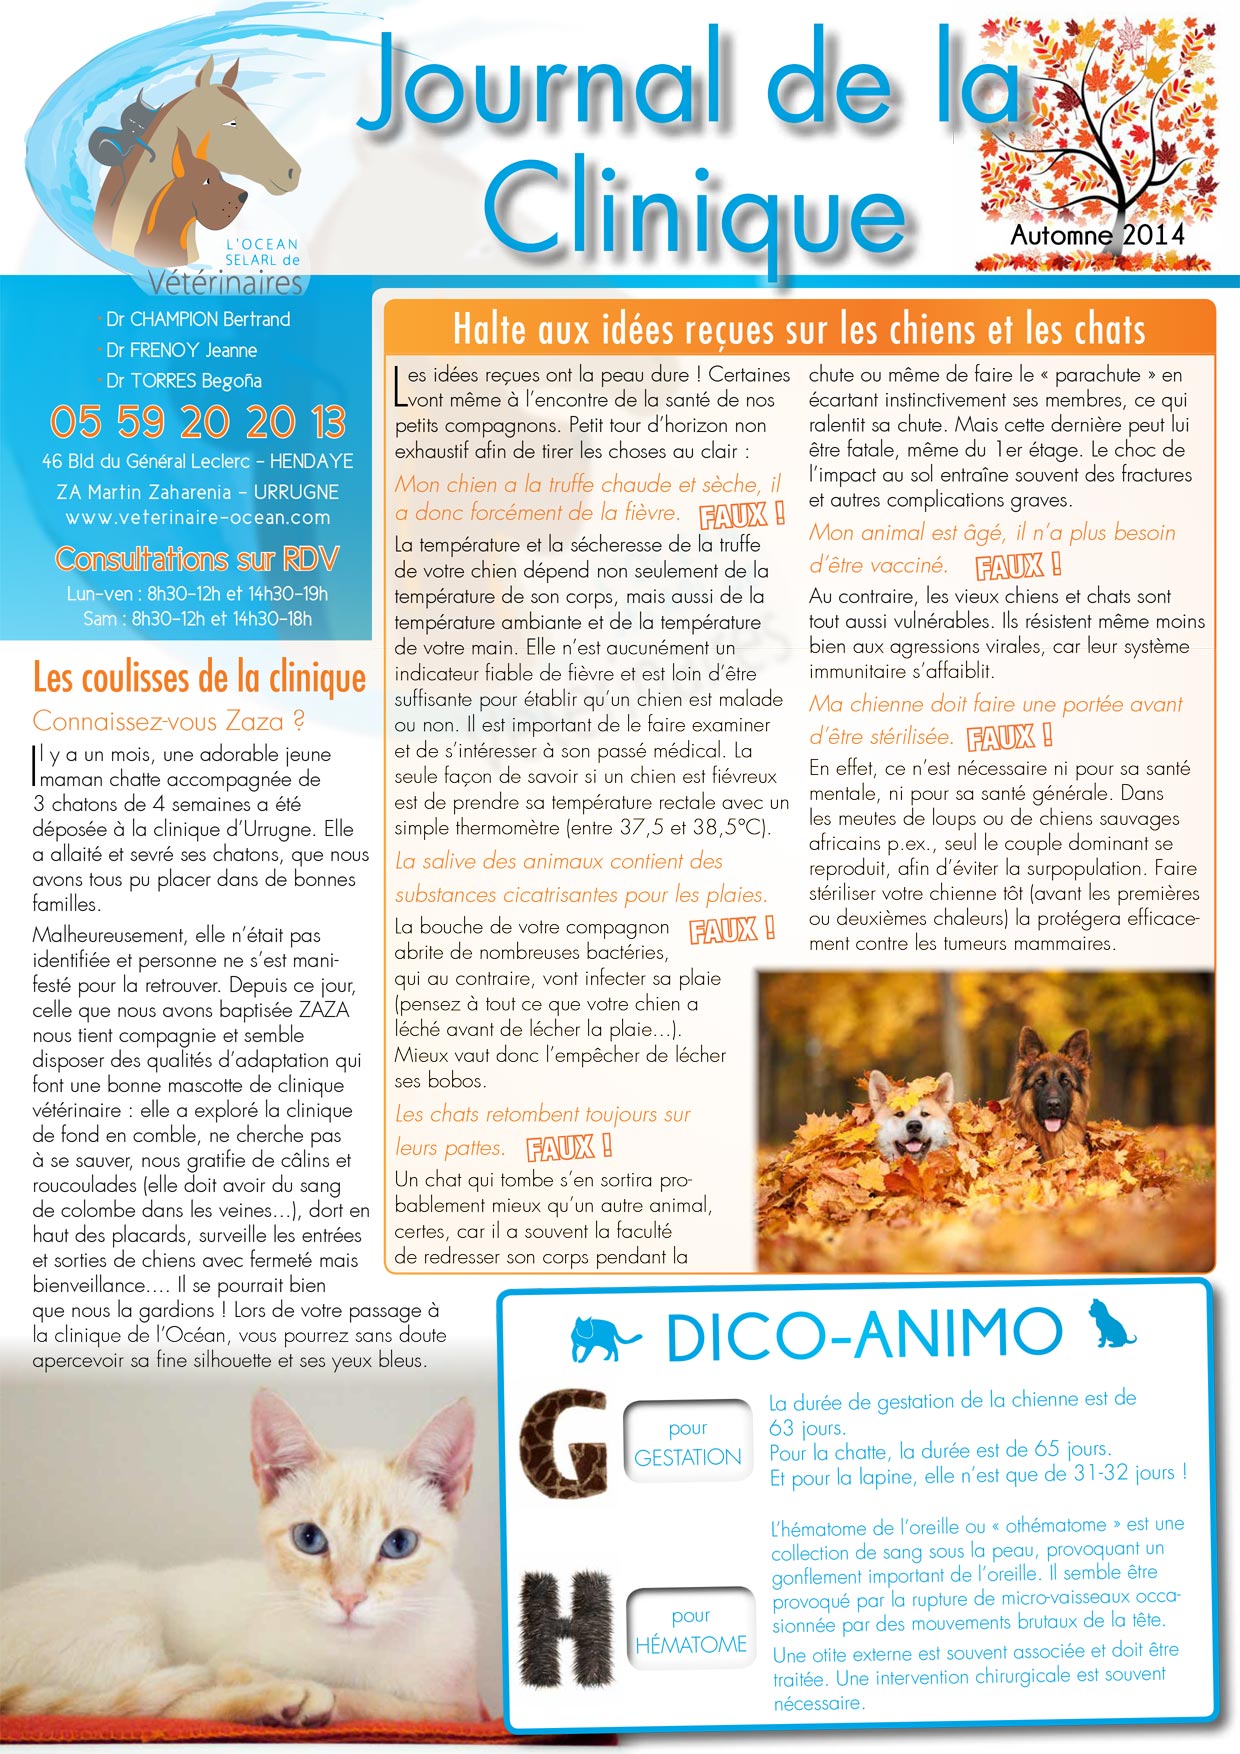 Le Journal de la Clinique - Automne 2014 page 1